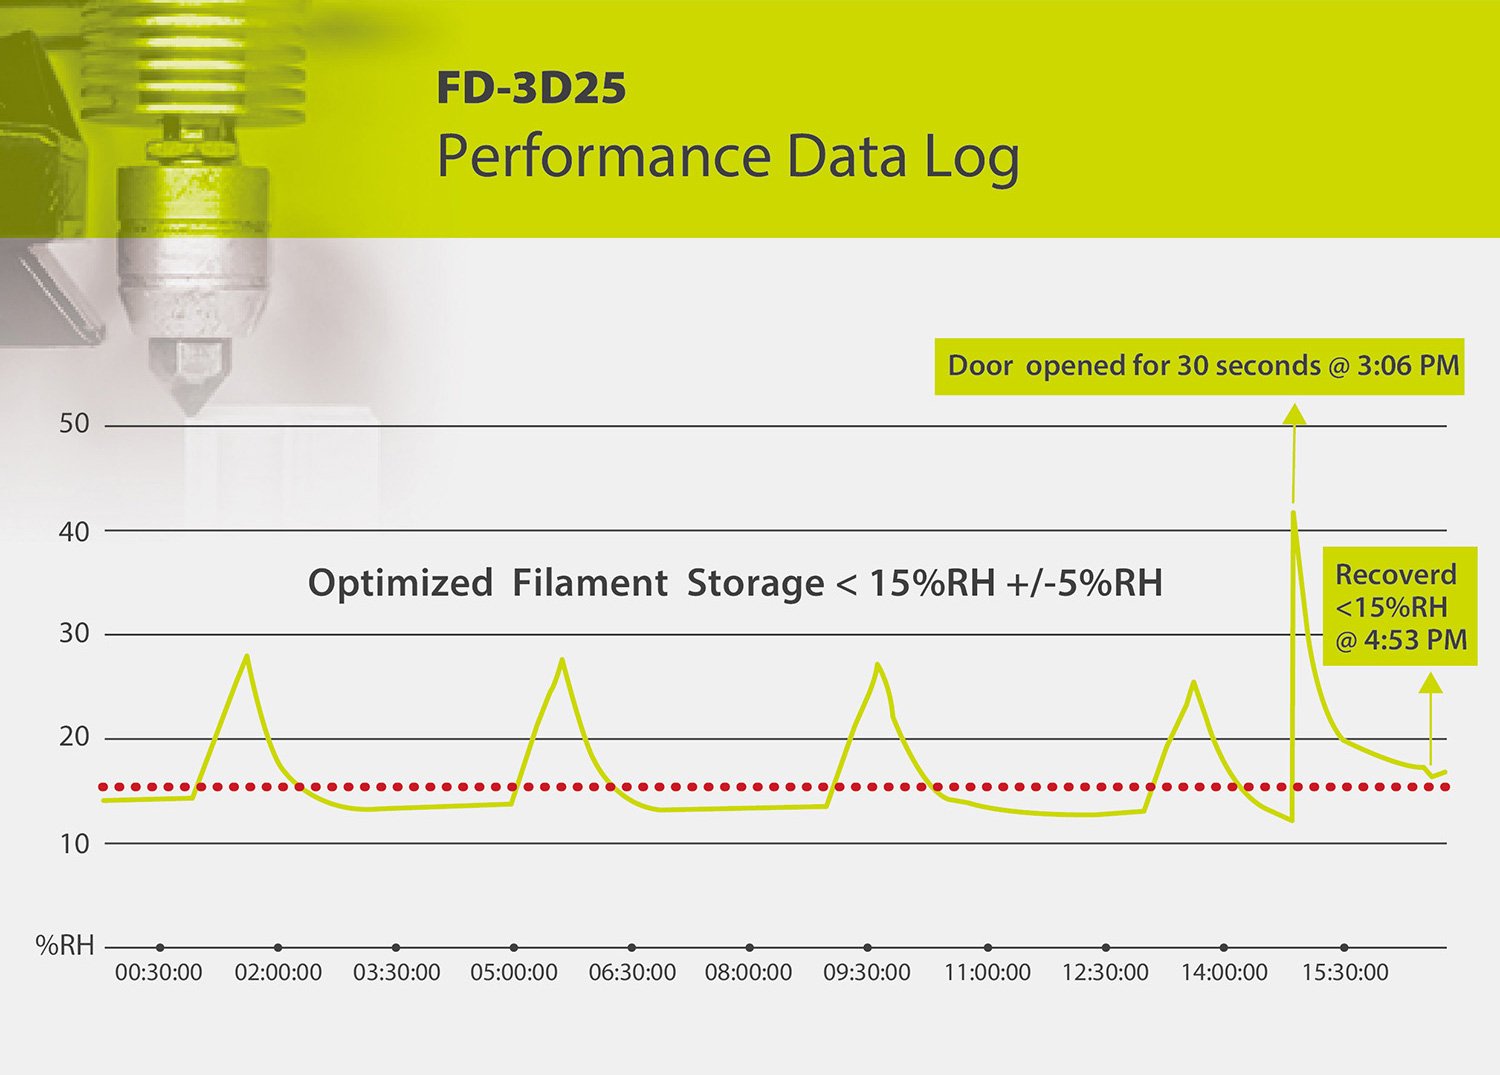 StatPro FD-3D25 Performance Data Log